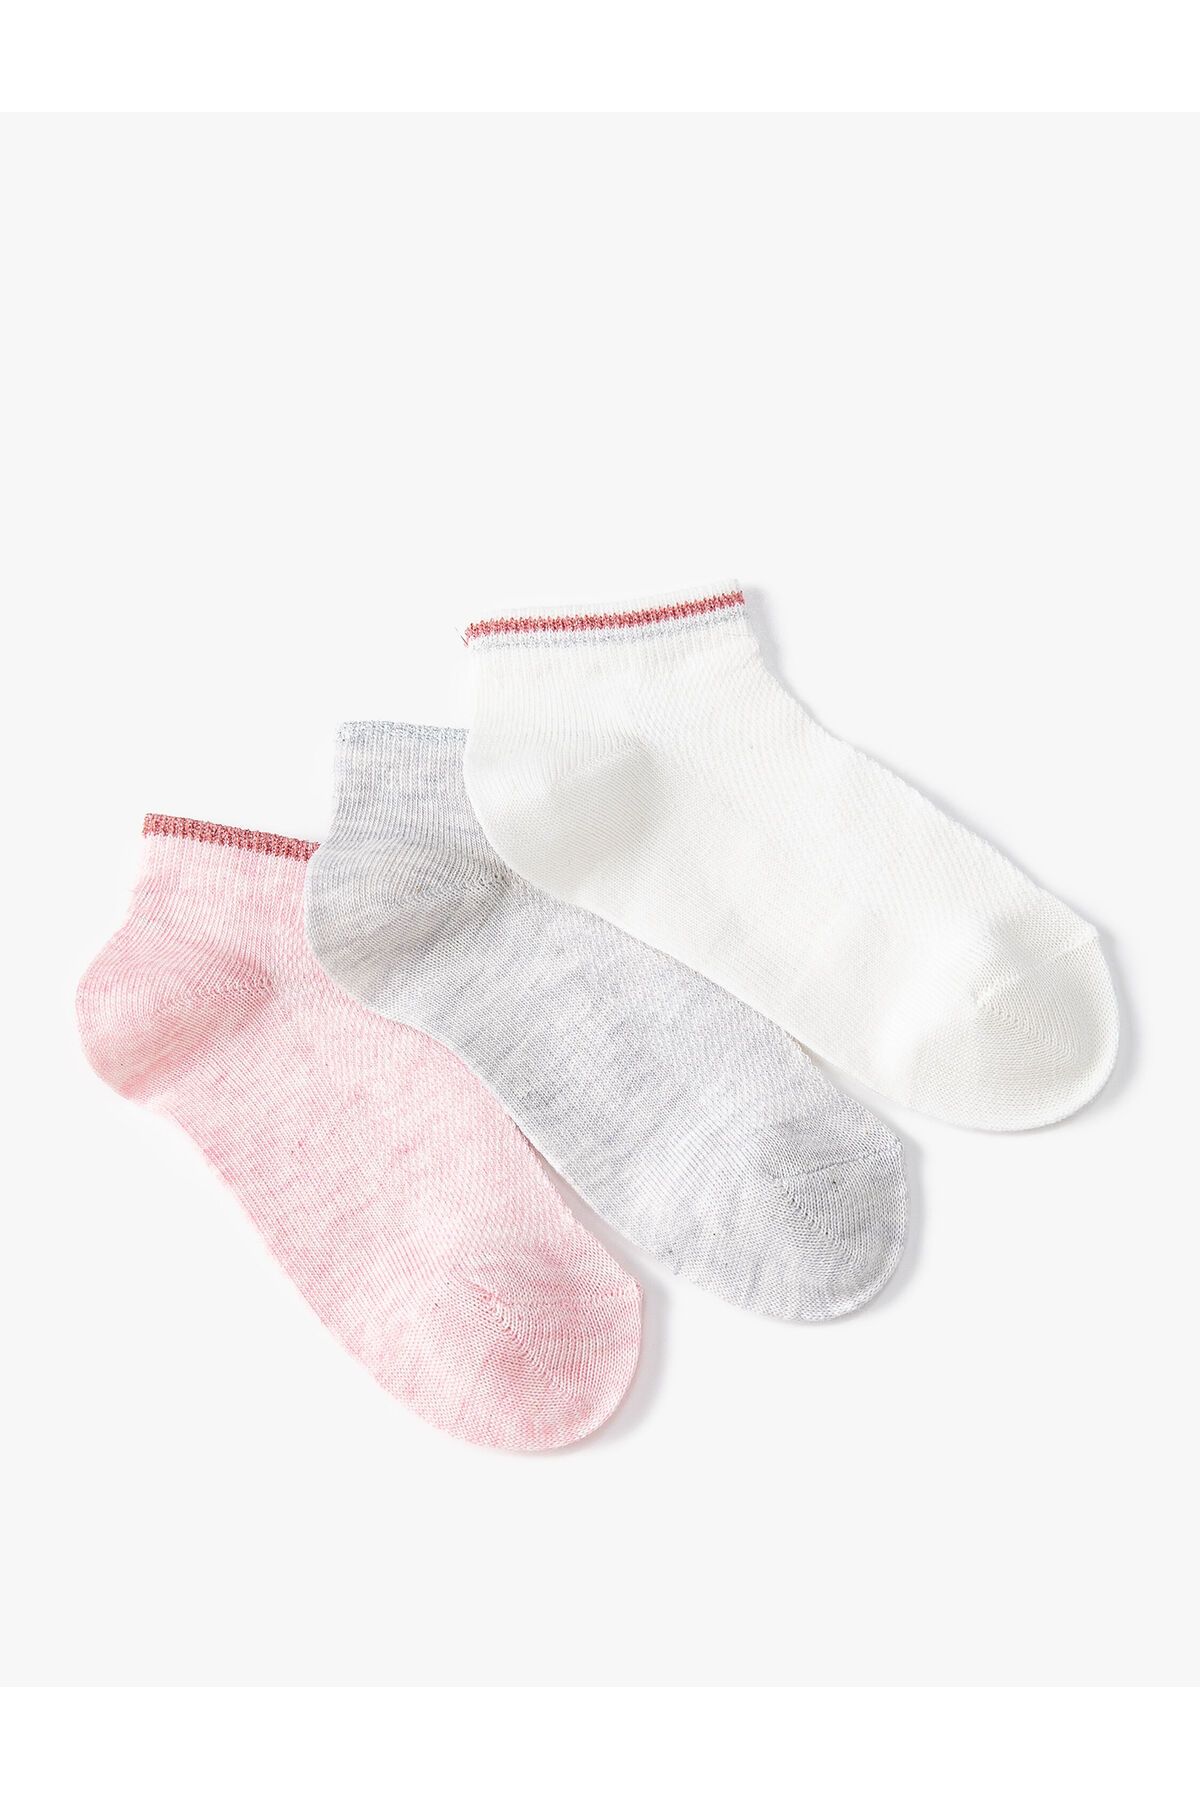 Koton 3’lü Çizgili Pamuk Karışımlı Çorap Seti